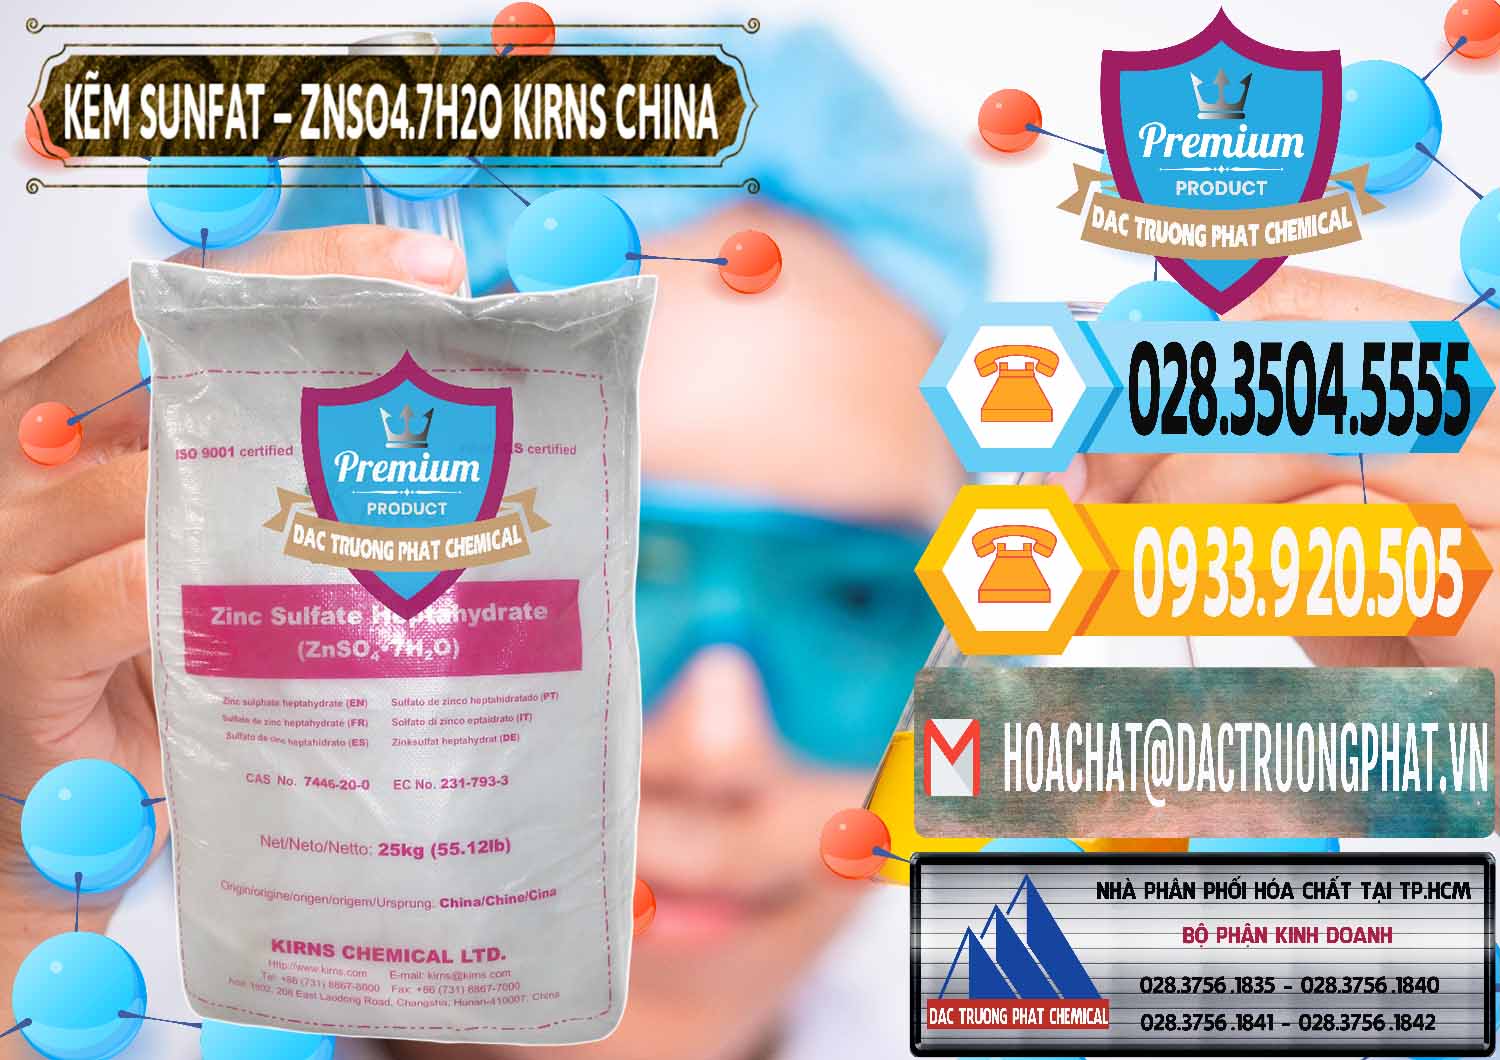 Nơi chuyên cung cấp và bán Kẽm Sunfat – ZNSO4.7H2O Kirns Trung Quốc China - 0089 - Cung cấp & kinh doanh hóa chất tại TP.HCM - hoachattayrua.net